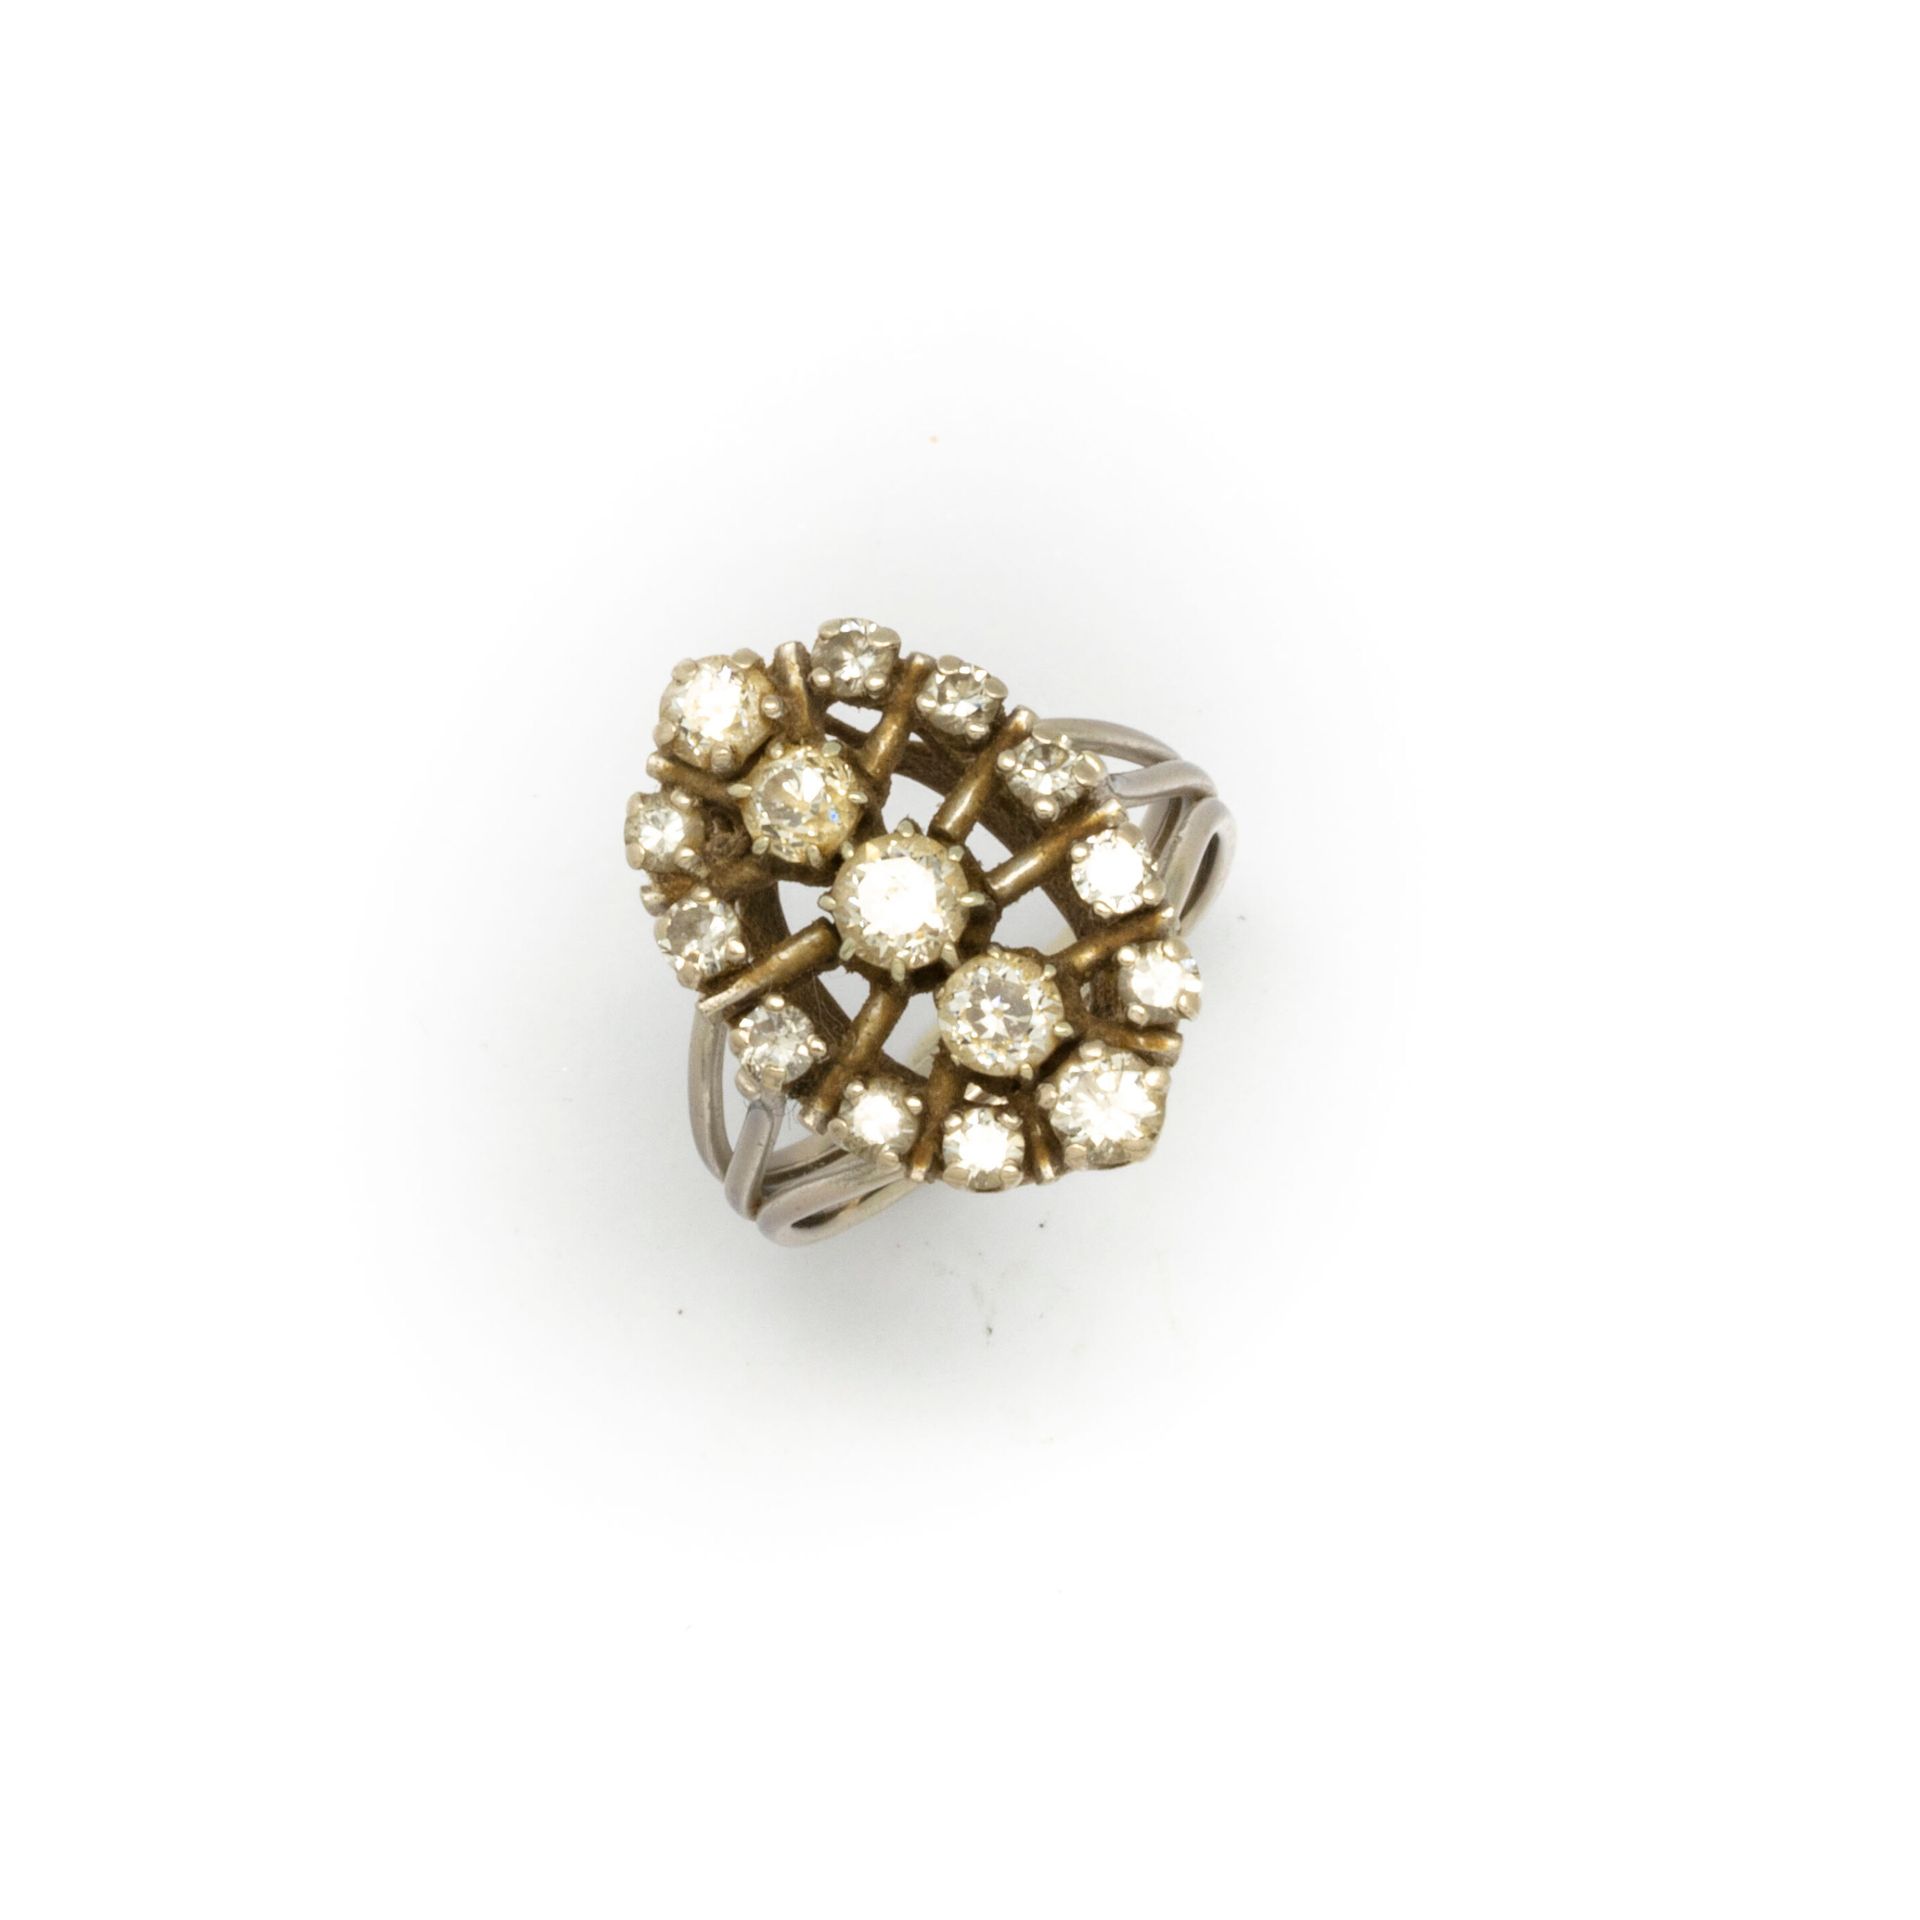 Null Anello navette in oro bianco, con pavé di piccoli diamanti

TDD : 52

Peso &hellip;